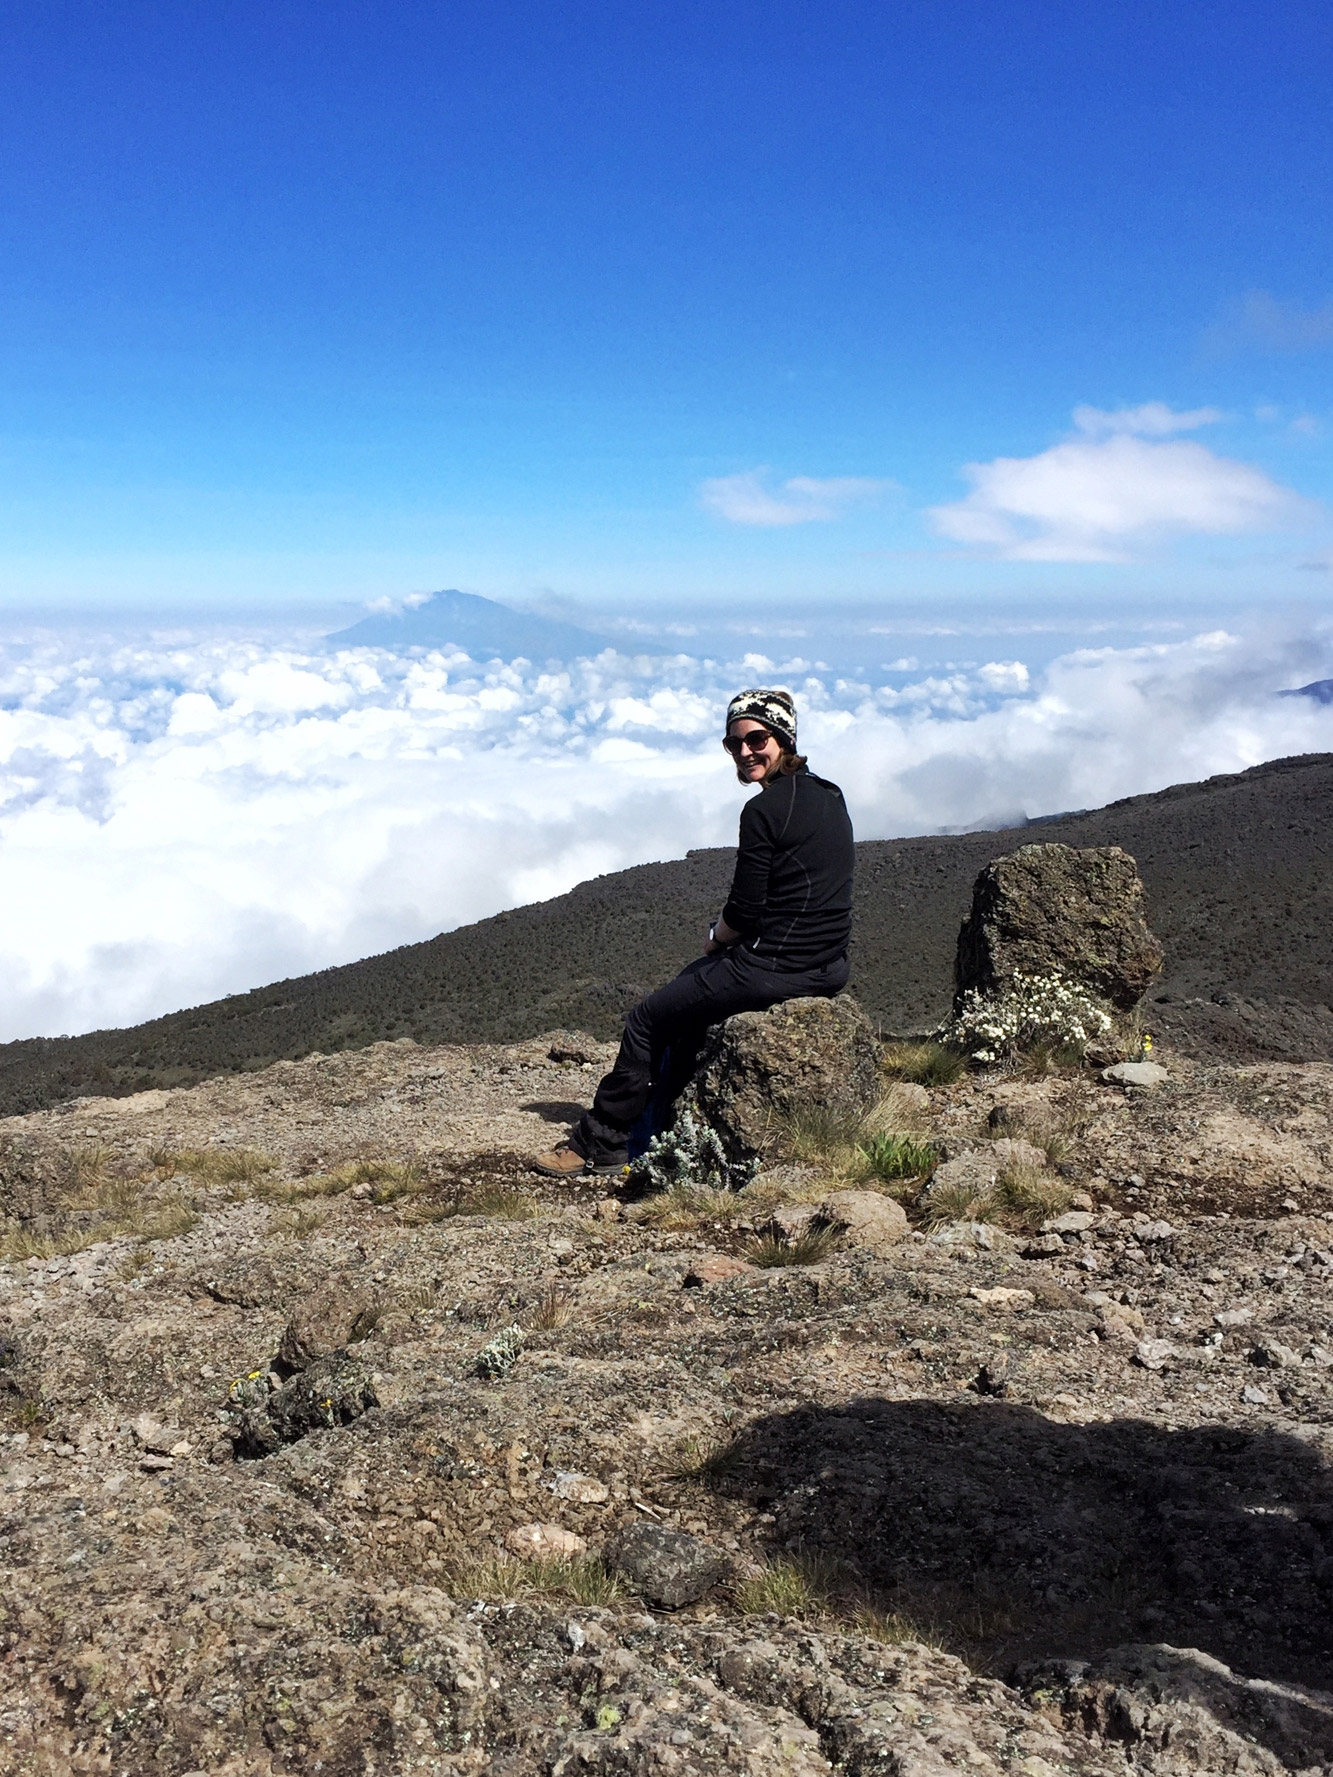 Mechteld - Kilimanjaro